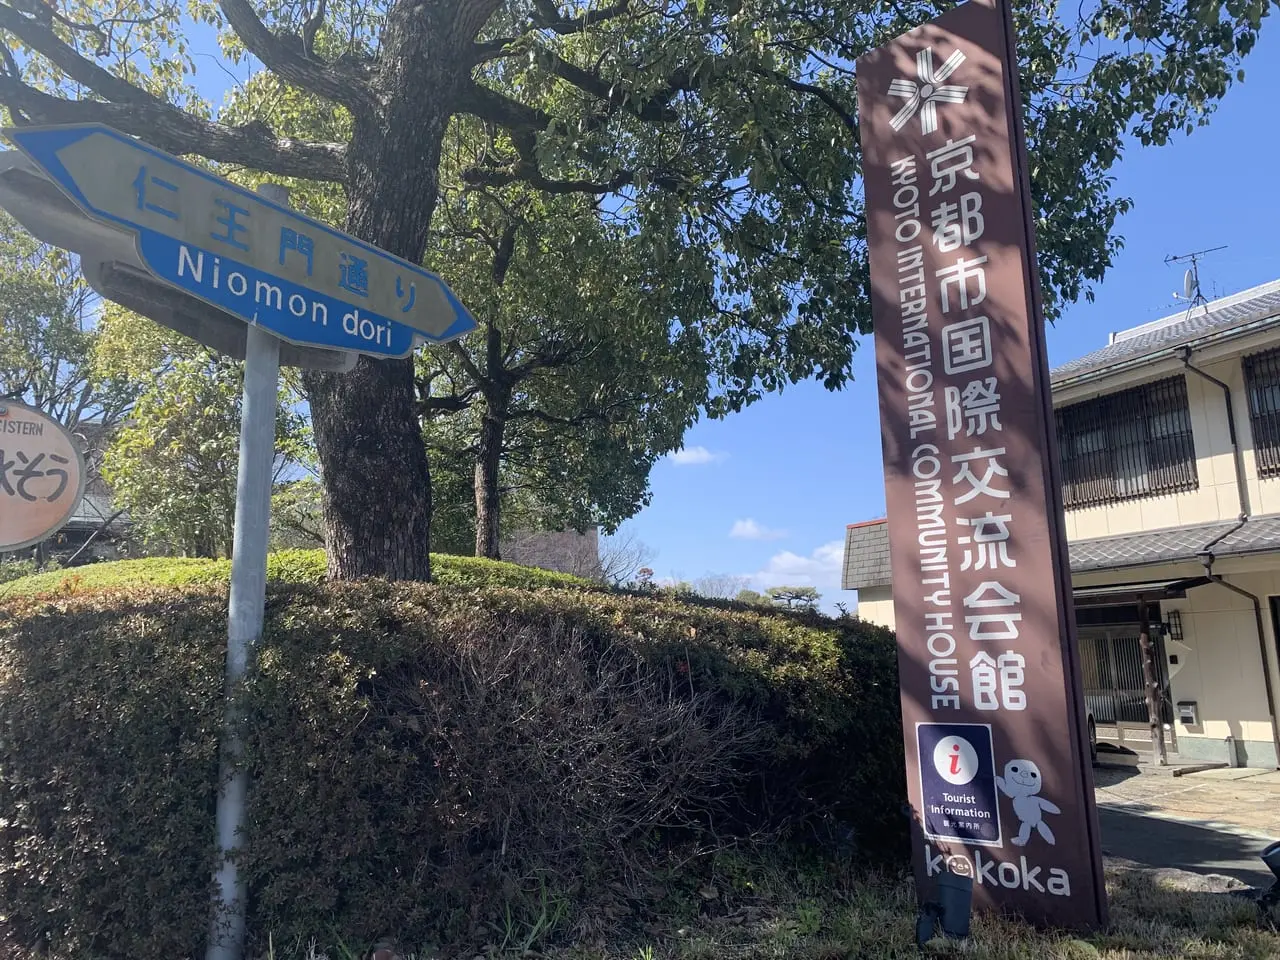 kokoka京都市国際交流館の入り口